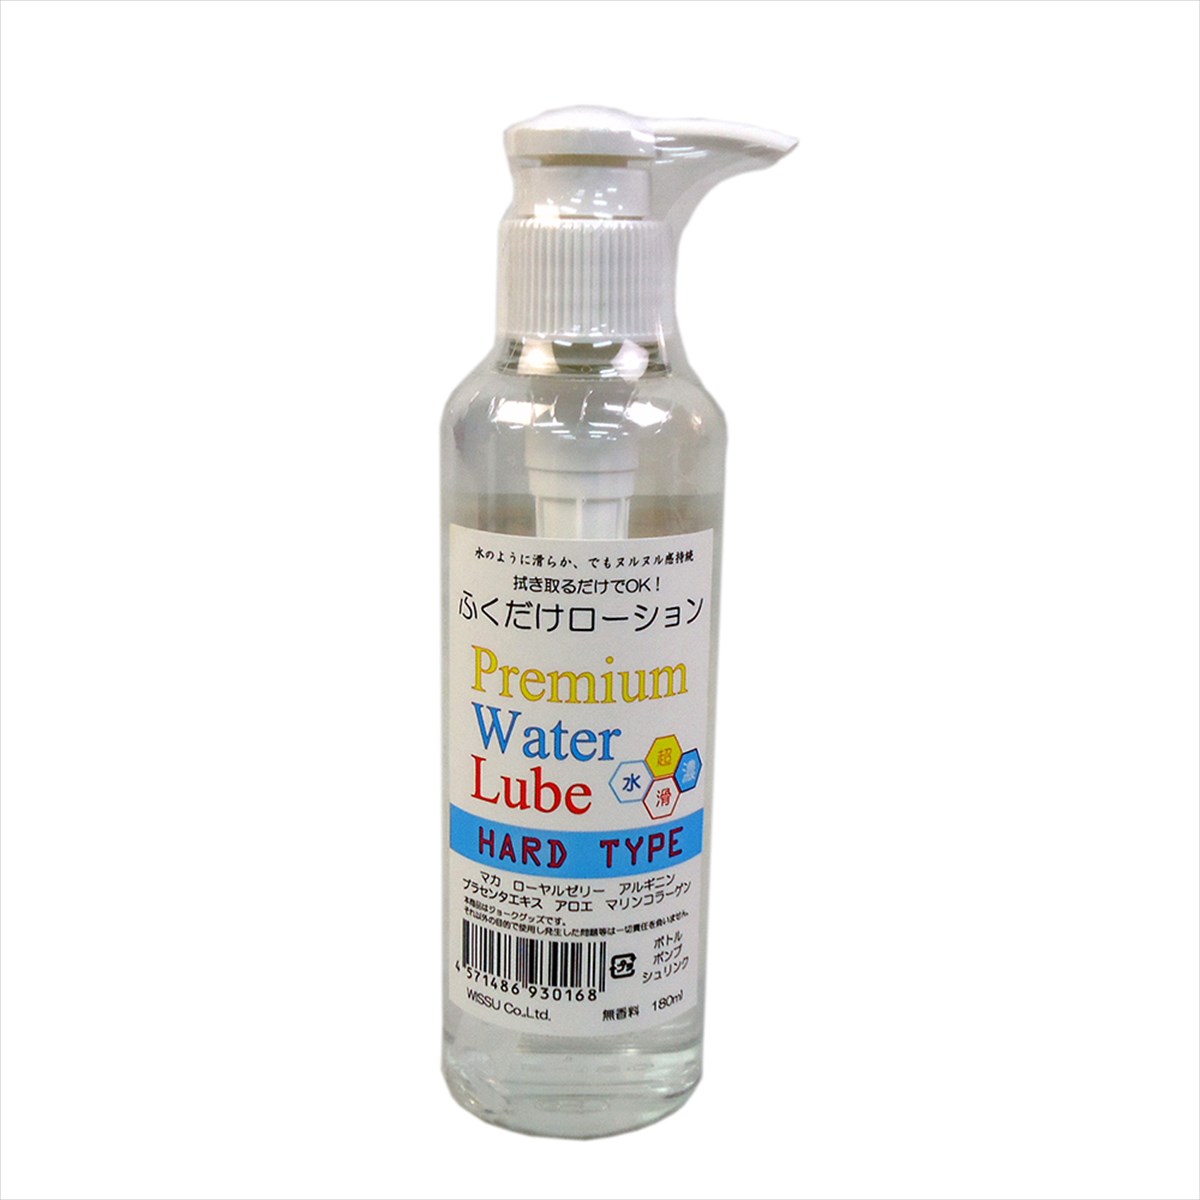 ふくだけローションPremium Water Lube【ハード】(180ml)